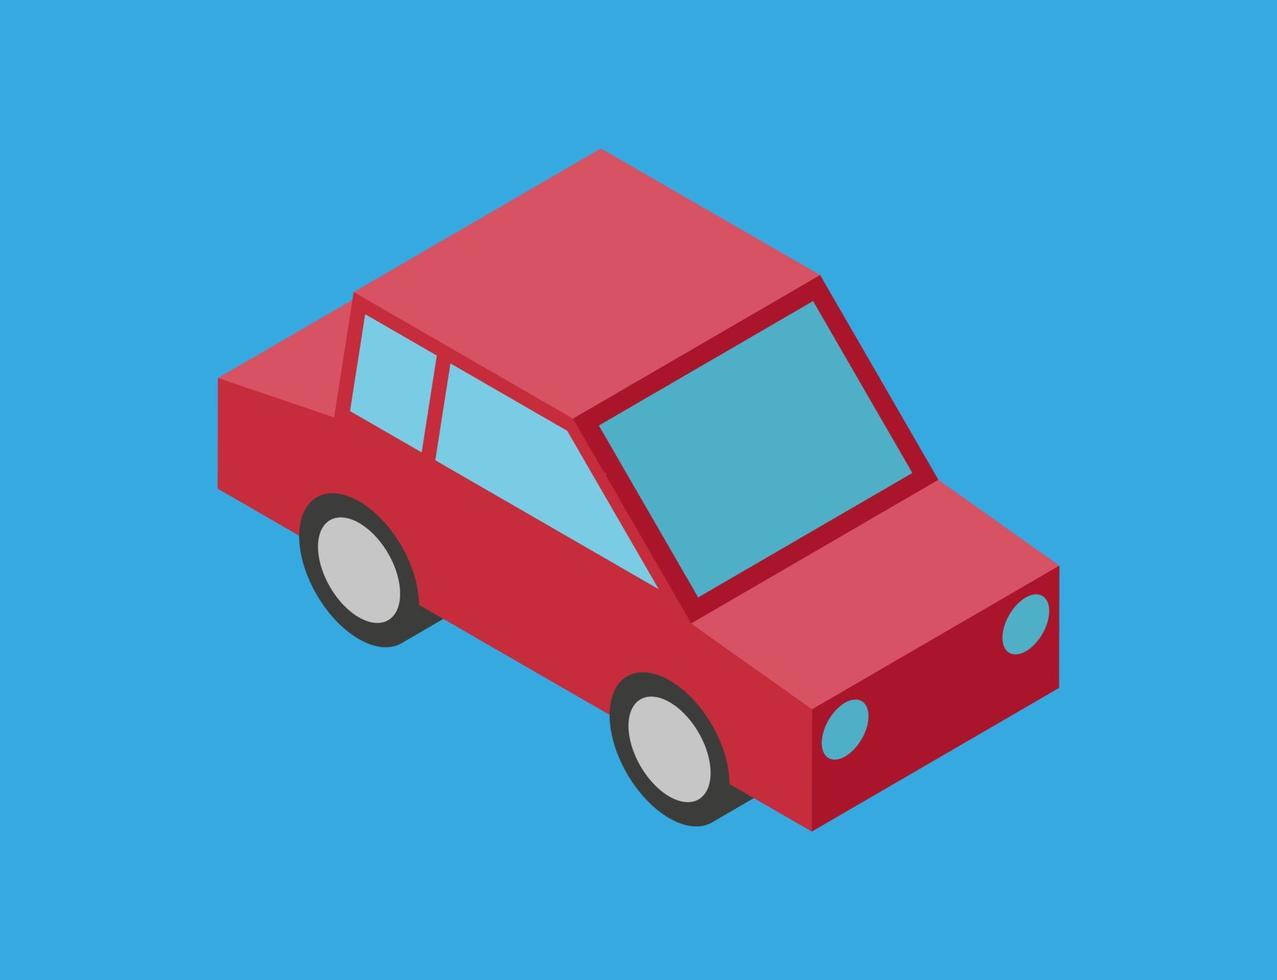 vektor illustration av enkel isometrisk bil isolerad på blå bakgrund. 3d stil bil illustration. röd bil enkel ikon. tecknad symbol för bil